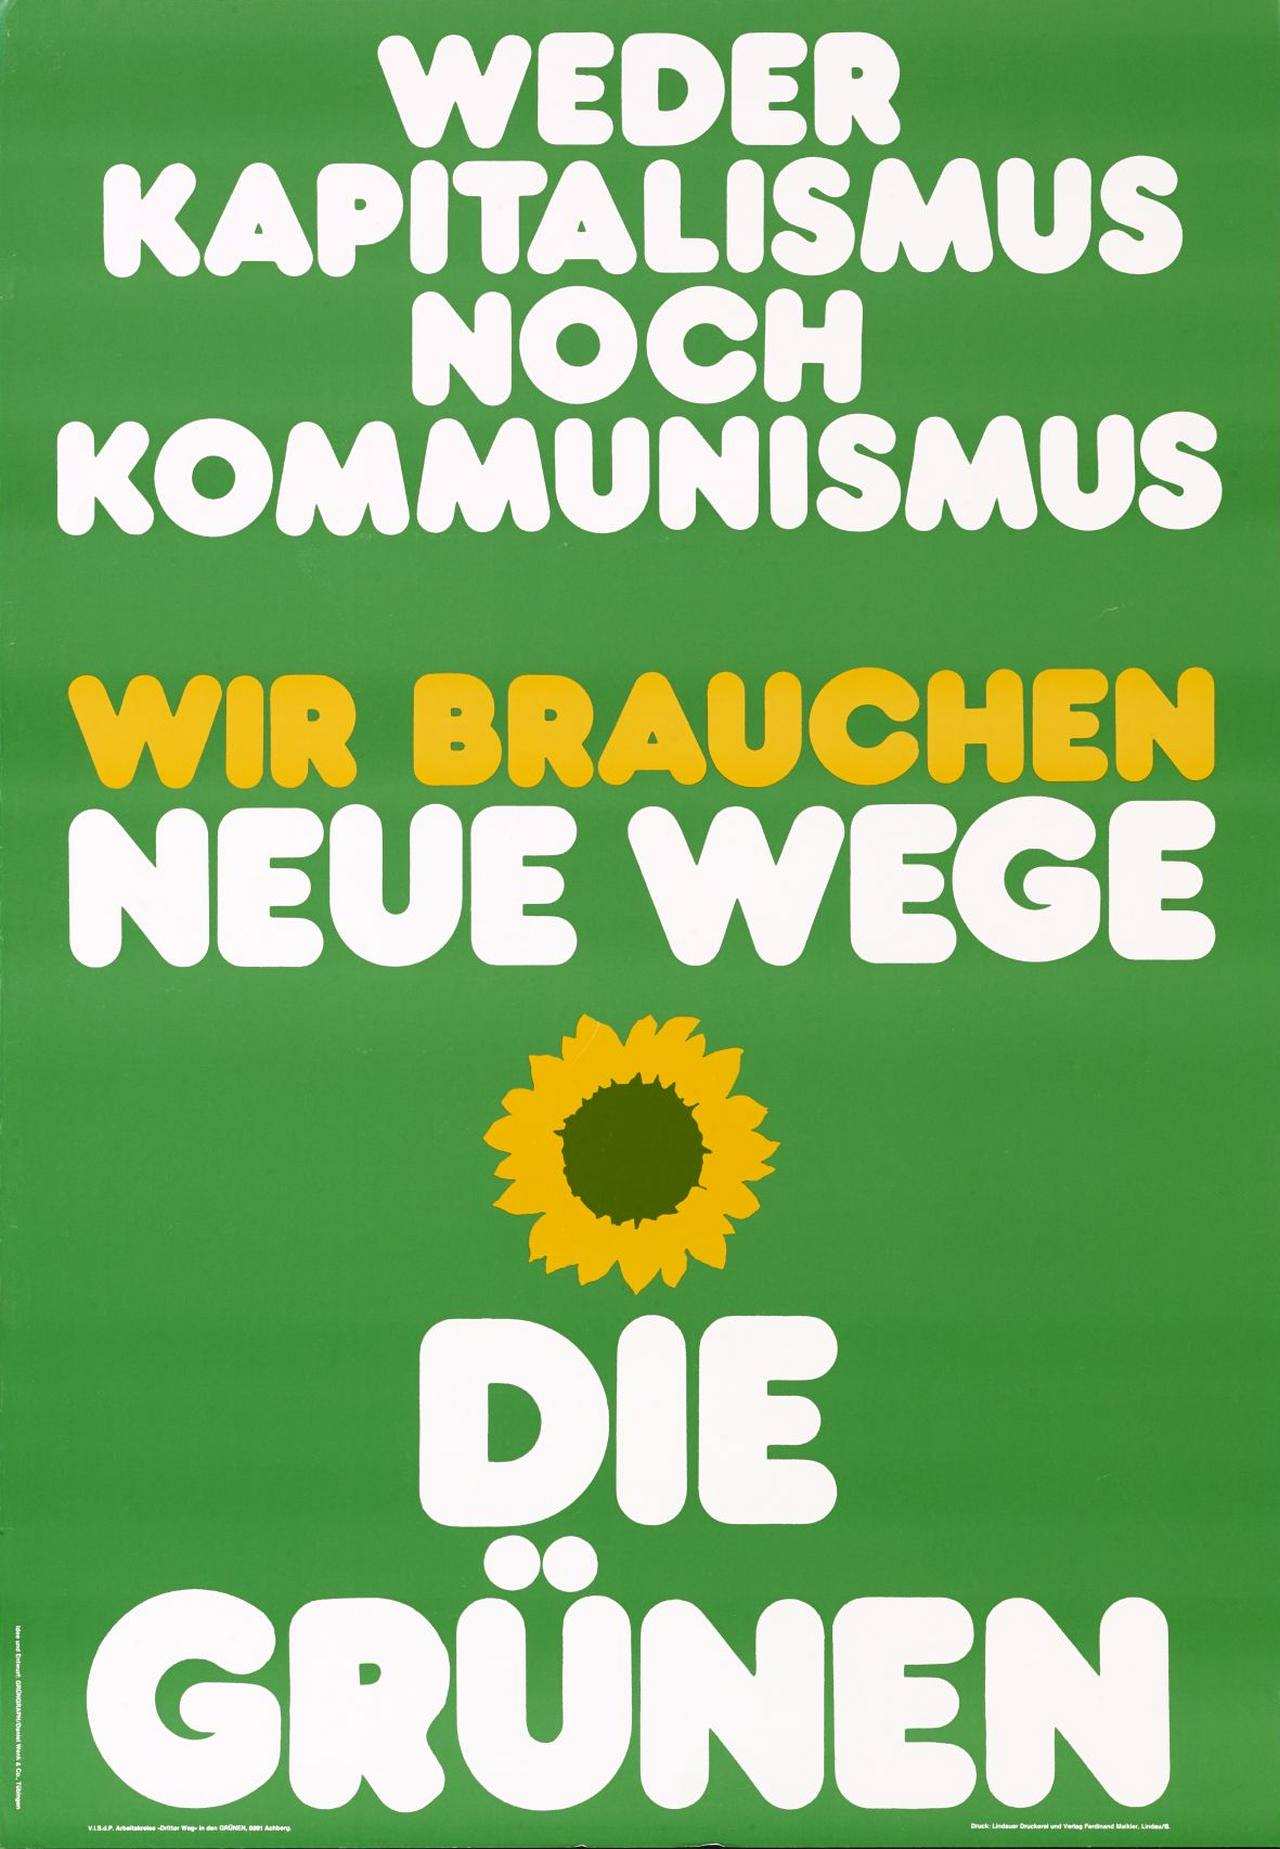 Plakat der Partei die Grünen: Hintergrundfarbe grün, zentrierte Schrift: 